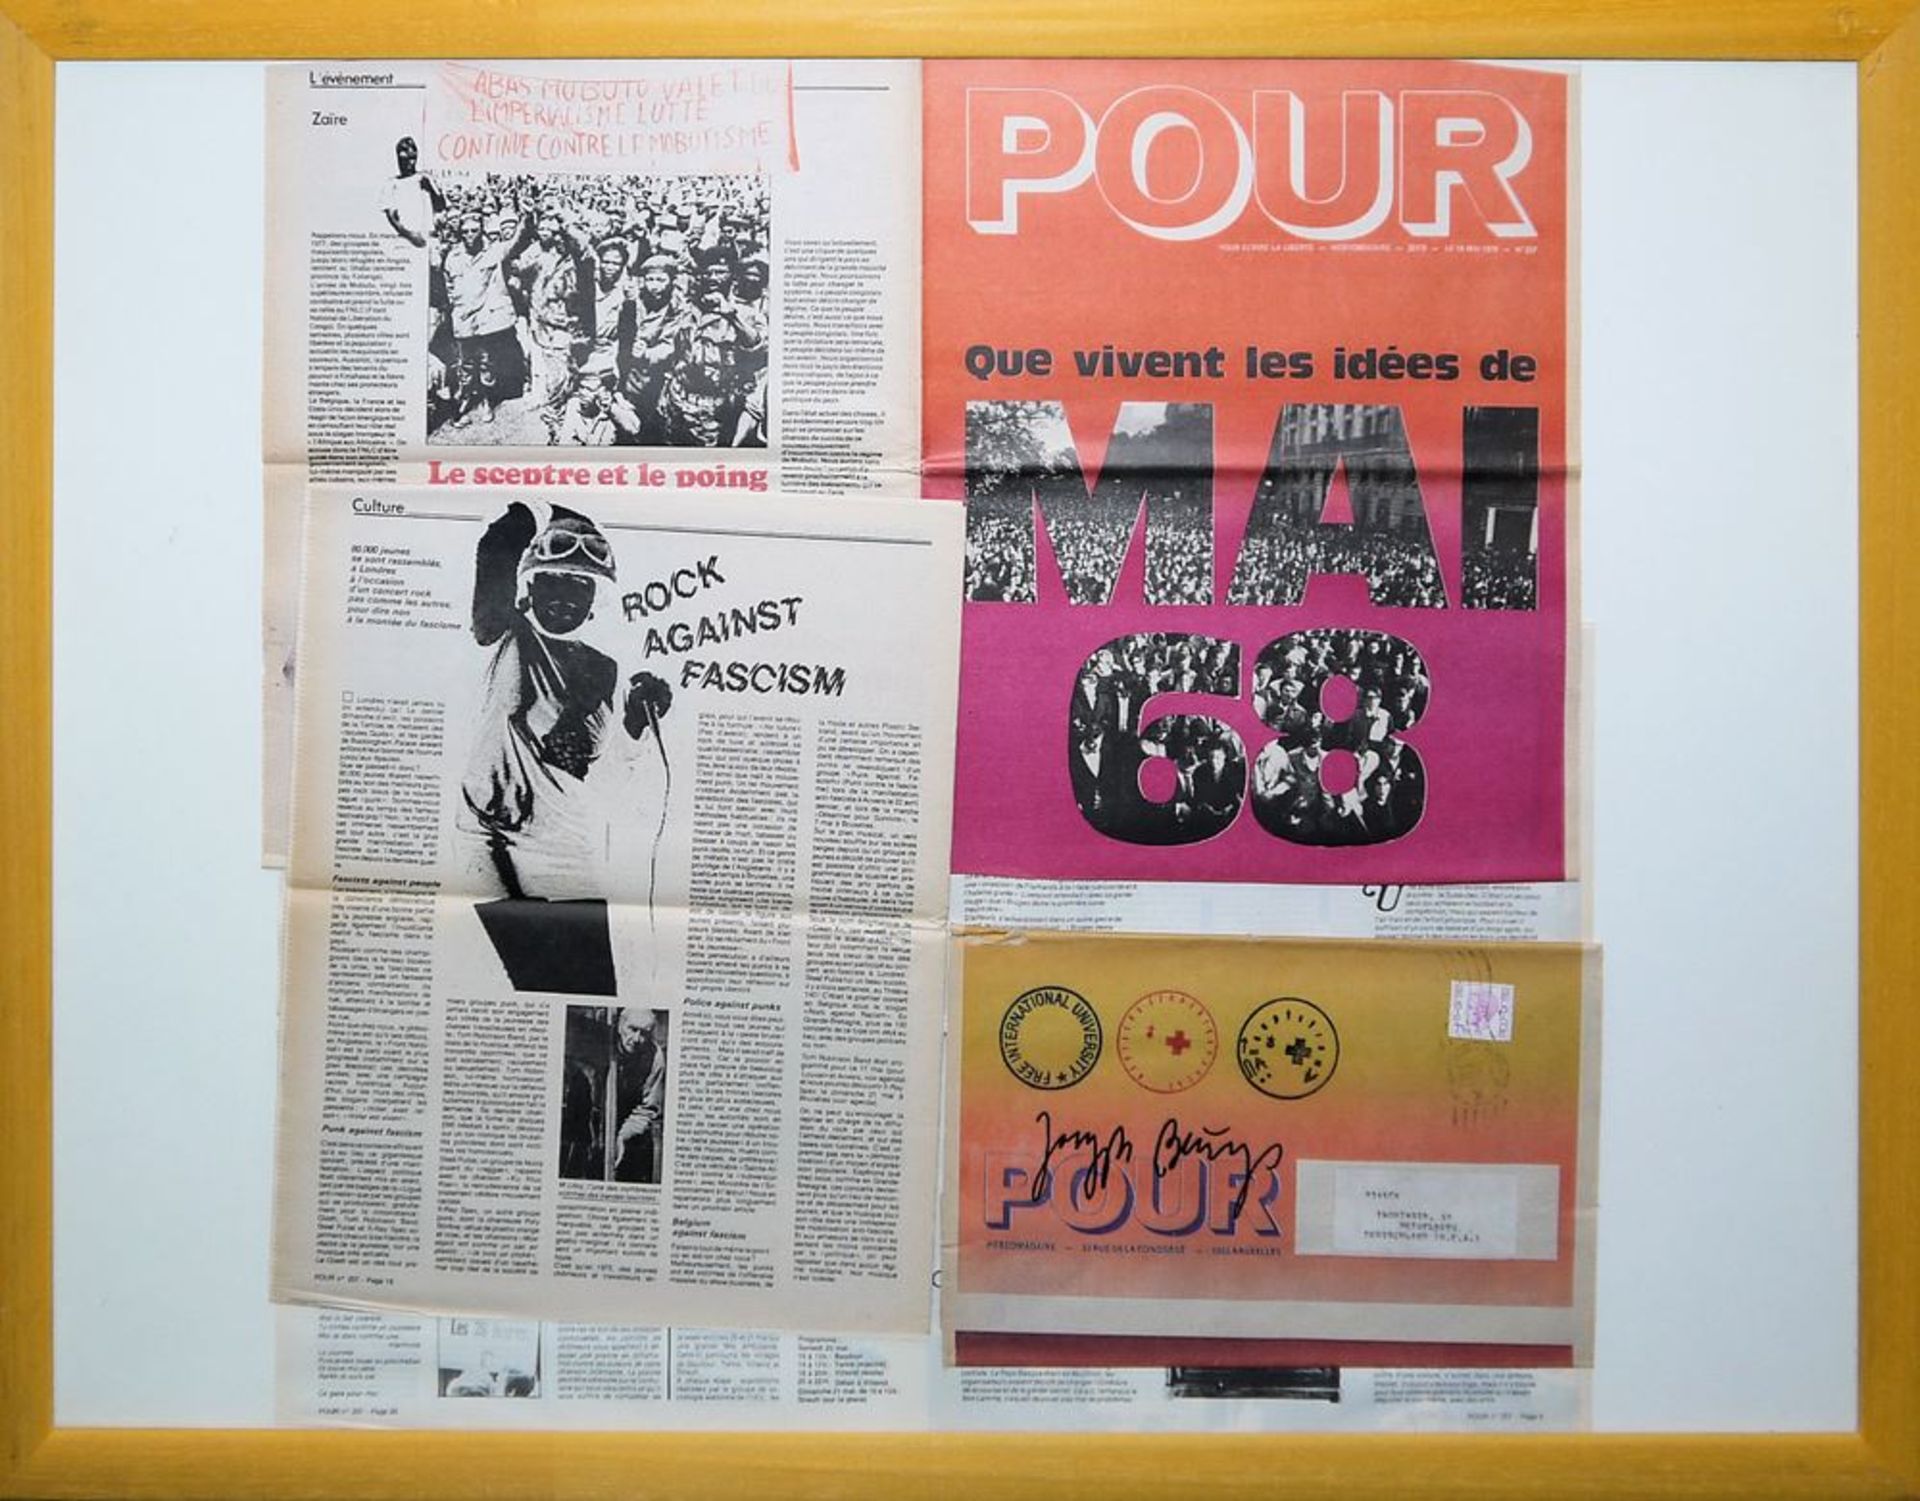 Joseph Beuys, signierte und gestempelte Zeitschrift "Pour" aus den 1970er Jahren, gerahmt